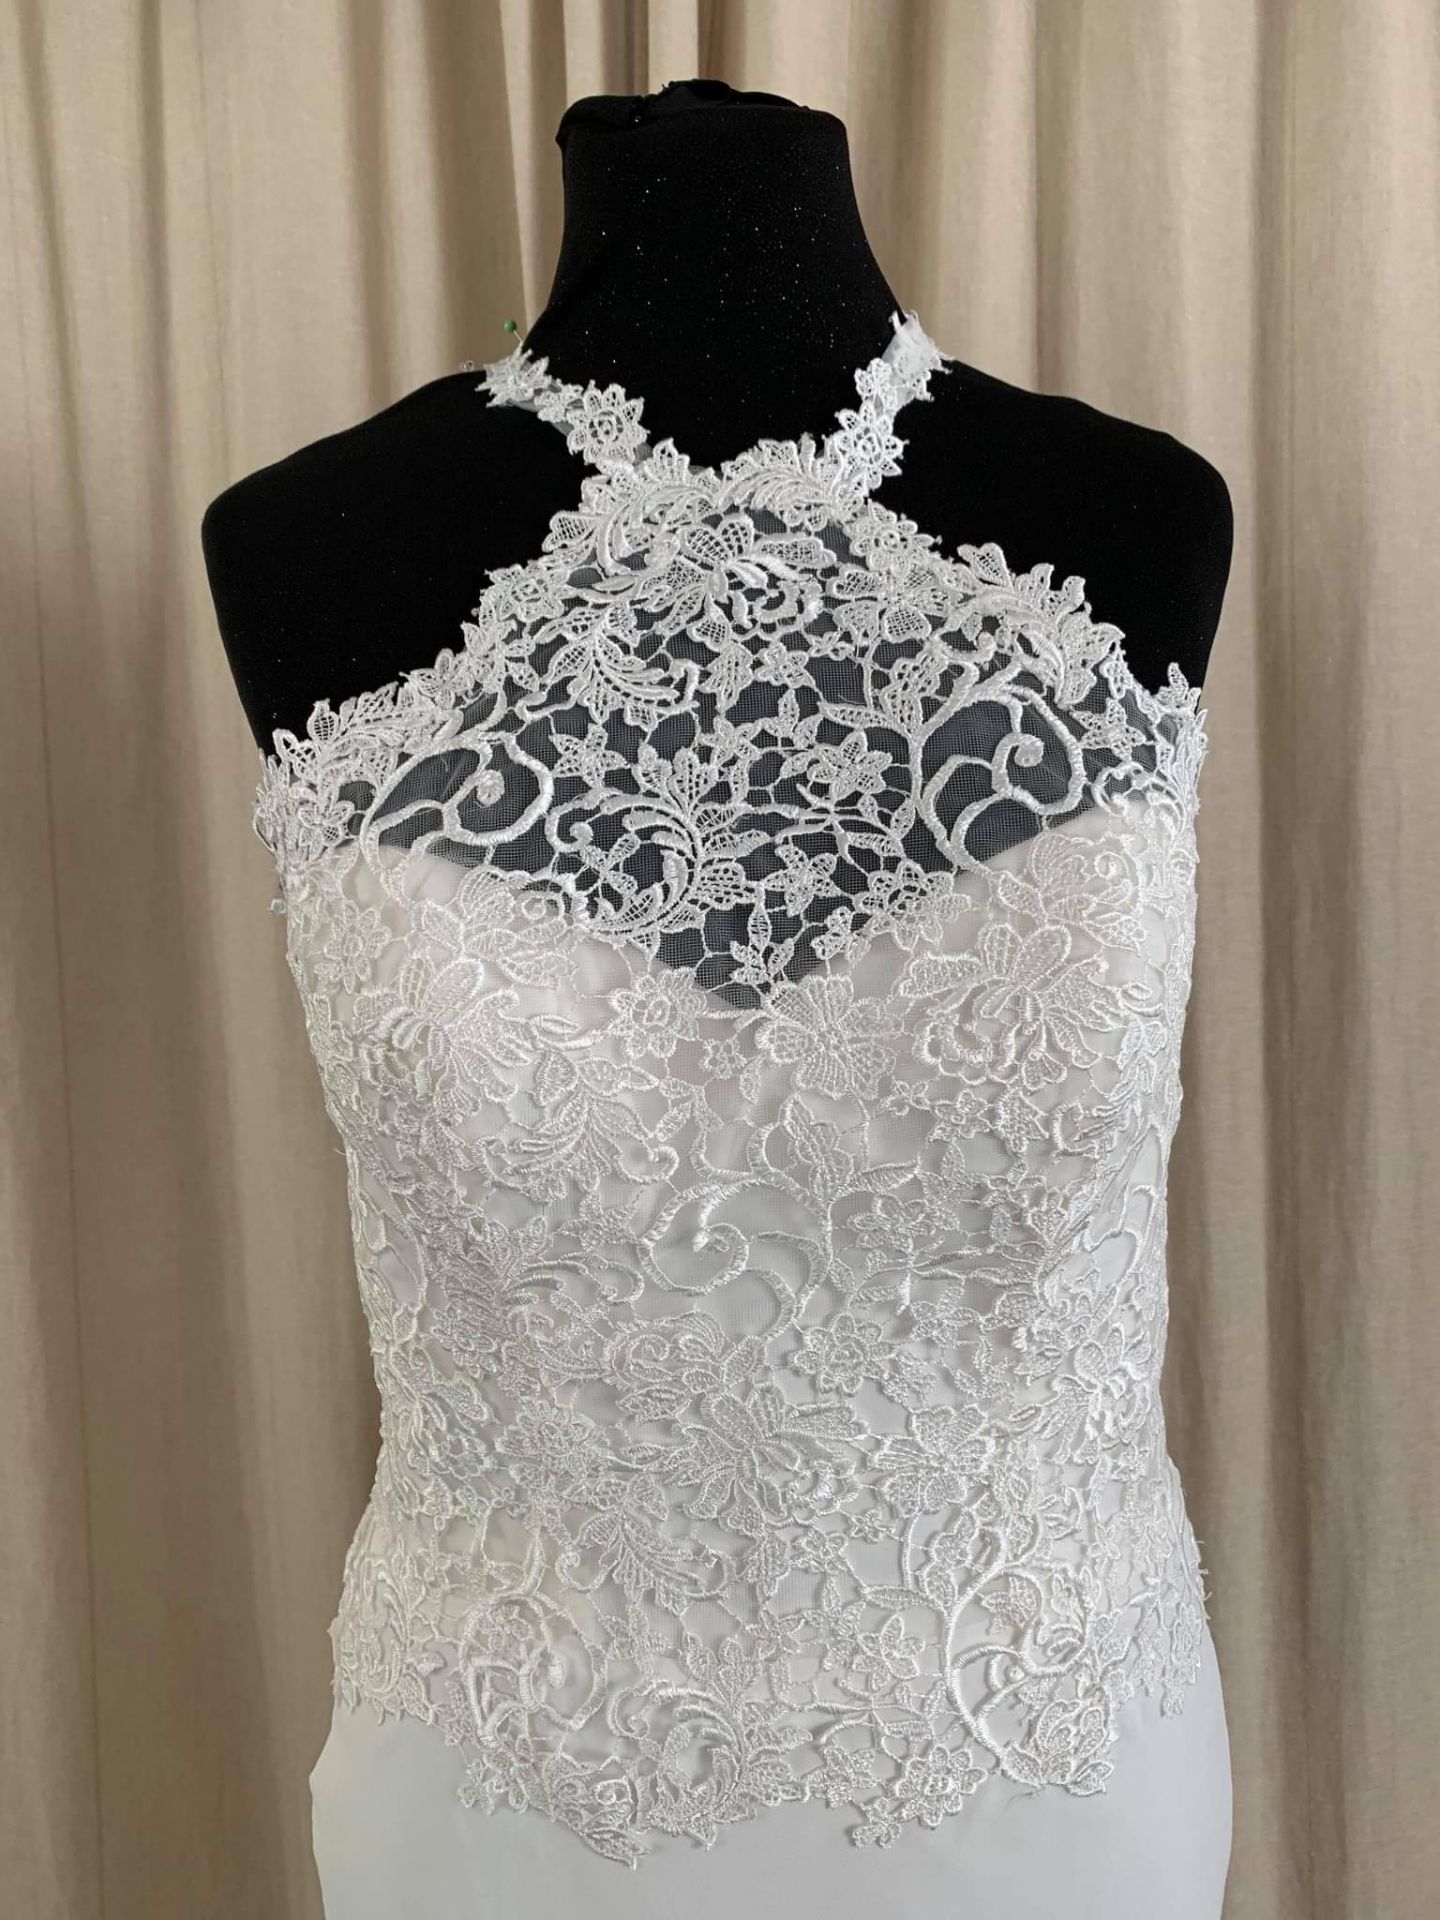 Alexia Wedding Dress Style W416 Size 6 - Image 4 of 5